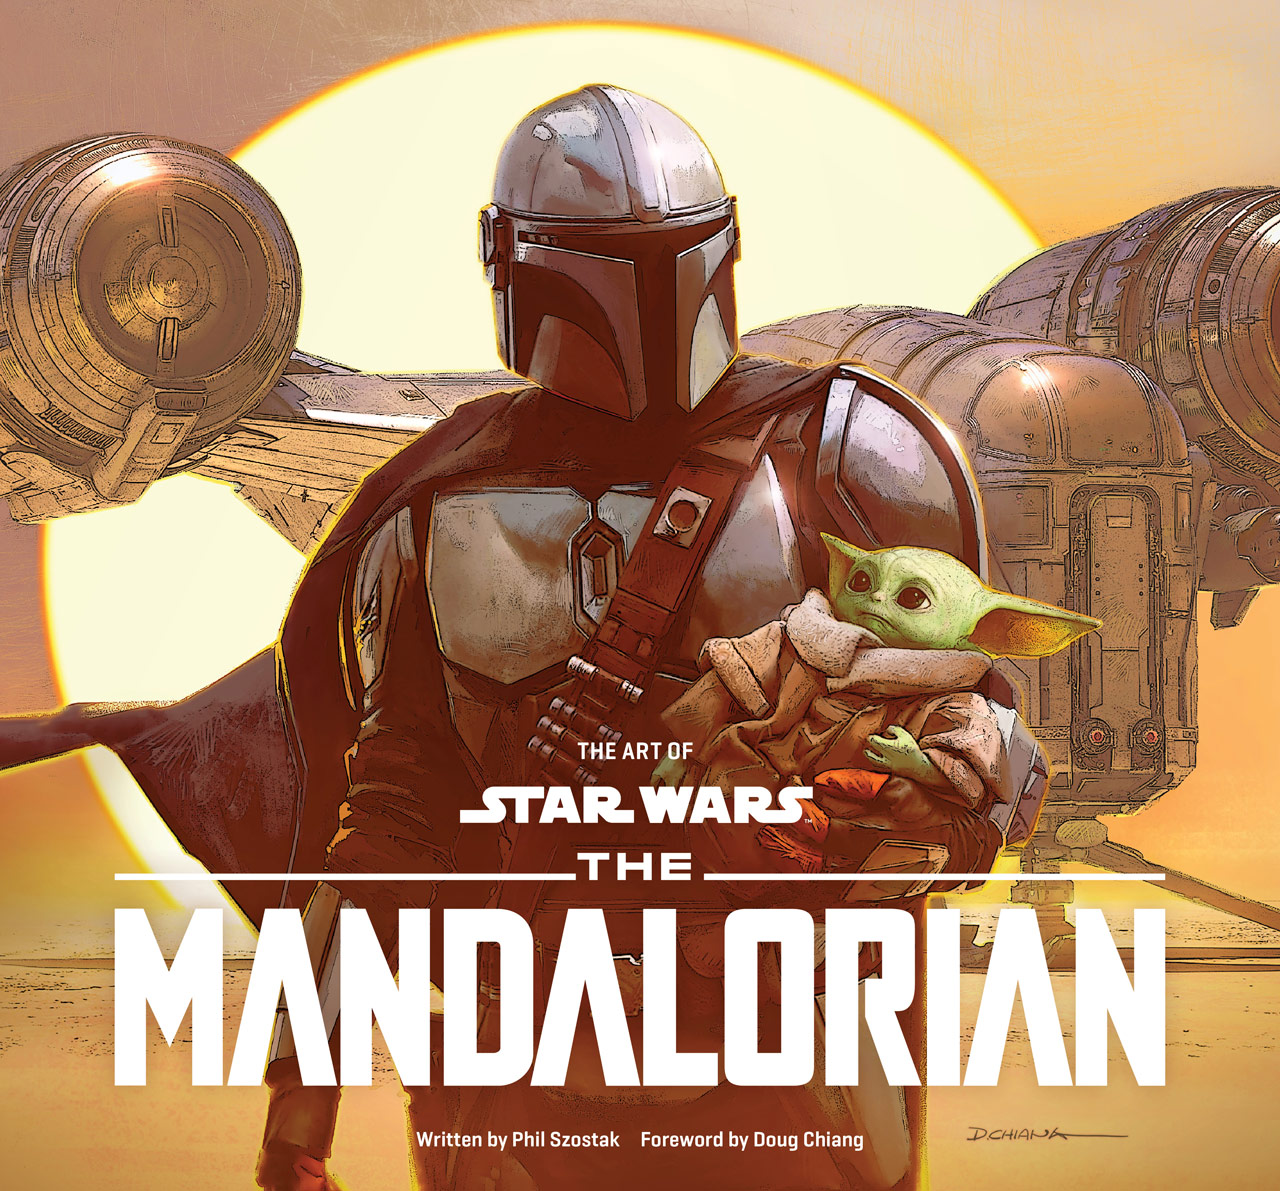 Star Wars 'Art of Mandalorian' cover